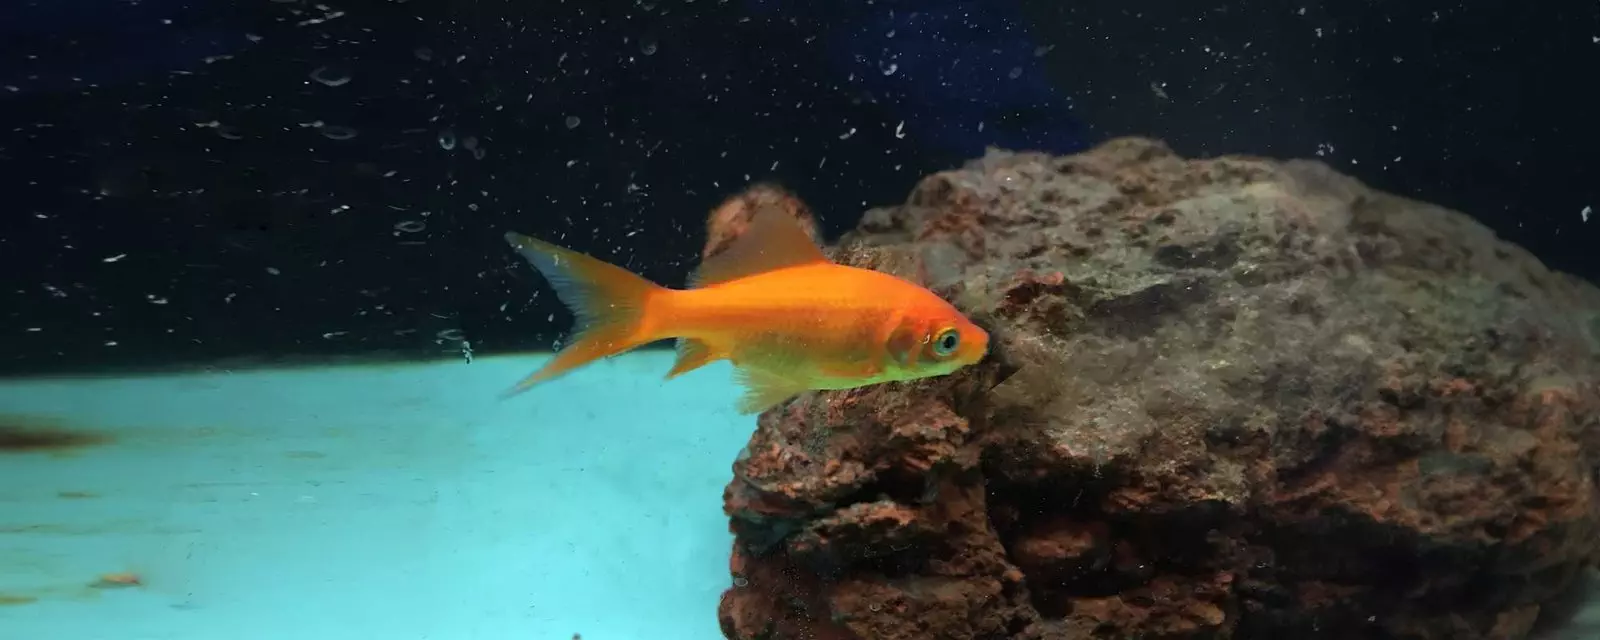 Goldfish (Carassius auratus)